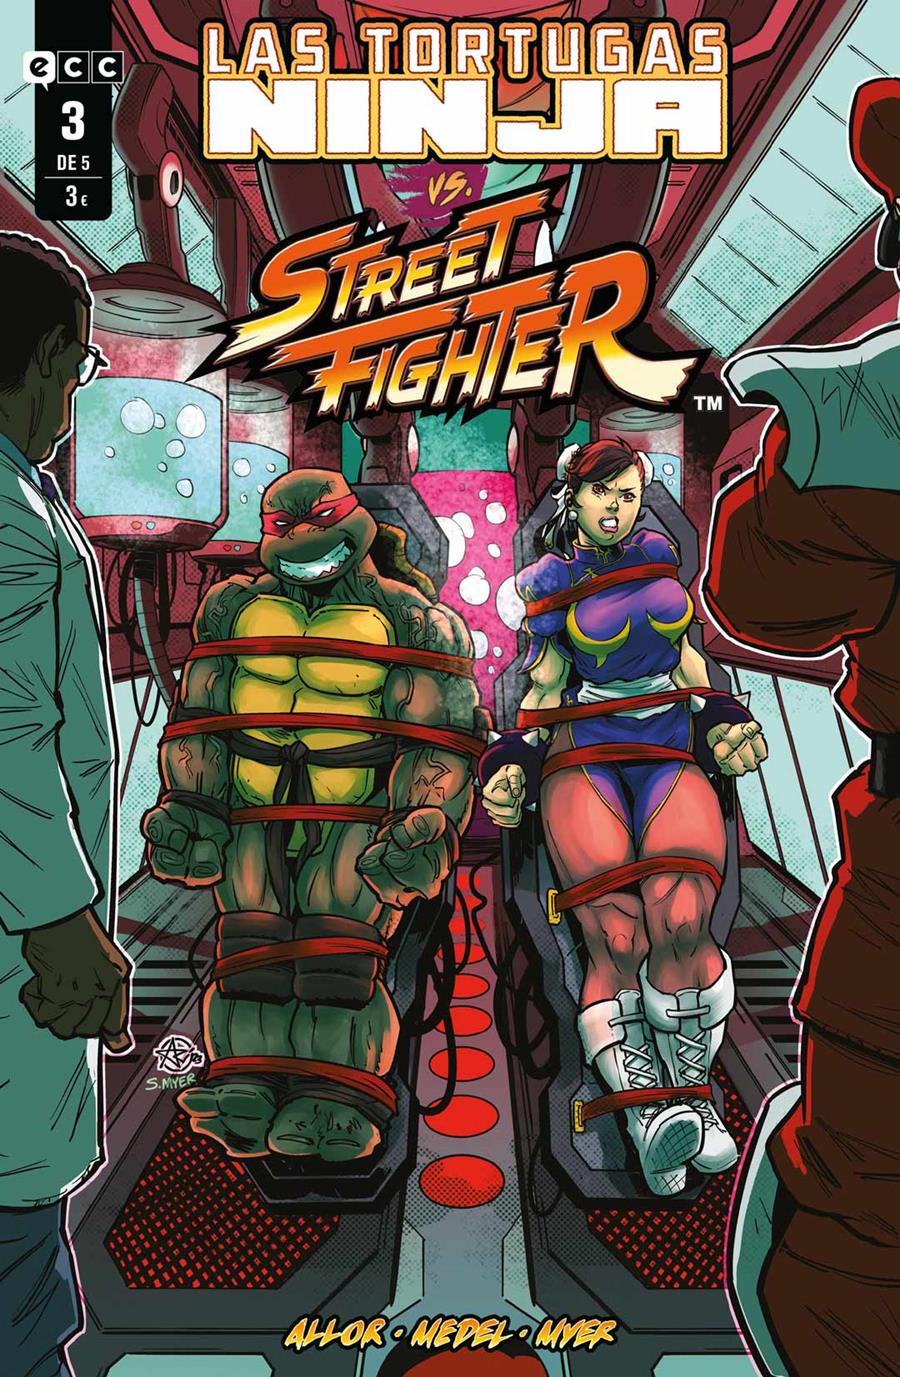 Las Tortugas Ninja vs. Street Fighter núm. 3 de 5 | N0124-ECC26 | Paul Allor, Ariel Medel | Terra de Còmic - Tu tienda de cómics online especializada en cómics, manga y merchandising